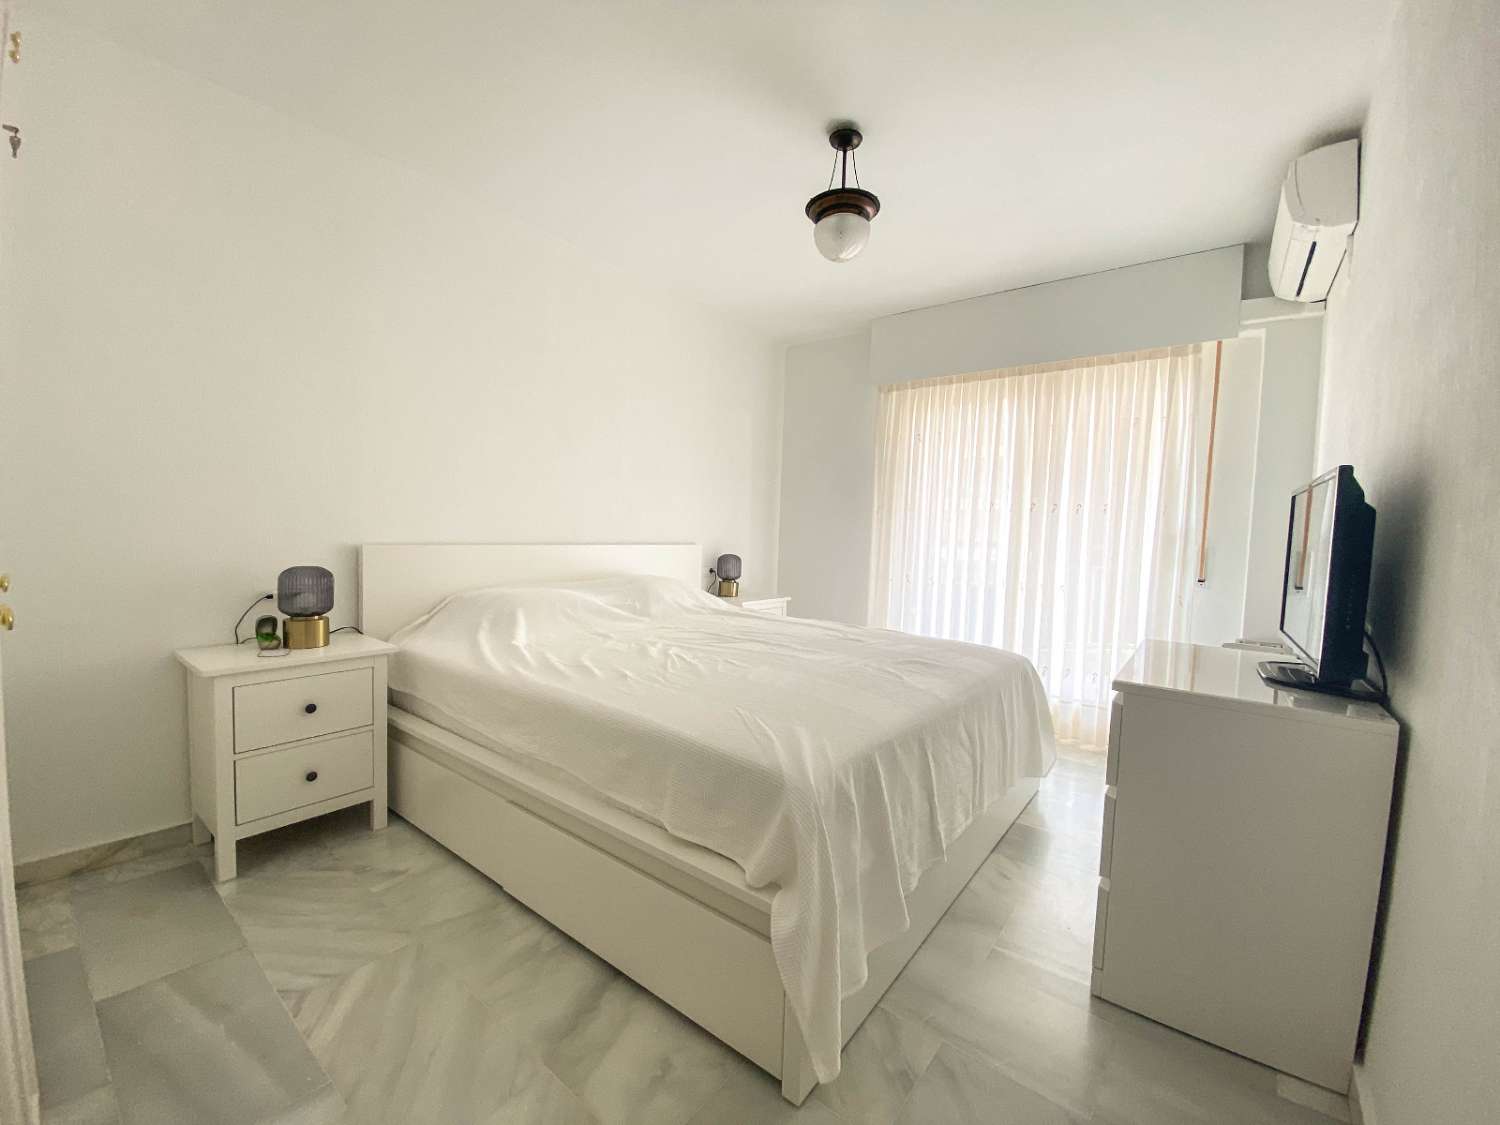 Espléndido apartamento en primera línea de playa con vistas al mar y terraza privada